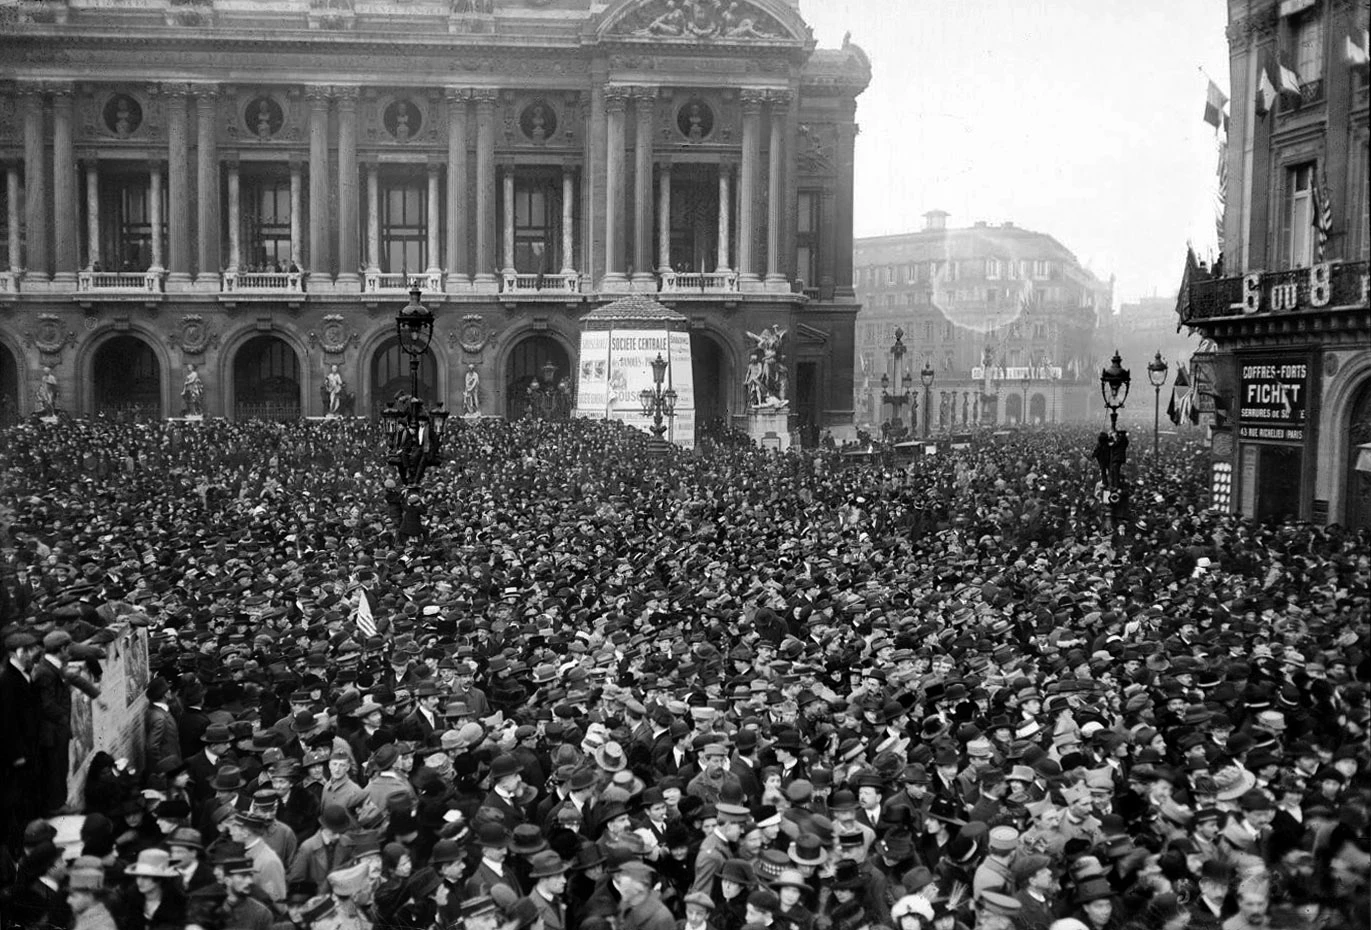 La foule place de l'Opéra à Paris le 11 novembre 1918. Photo choisie par monsieurdefrance.com : Gallica.fr 